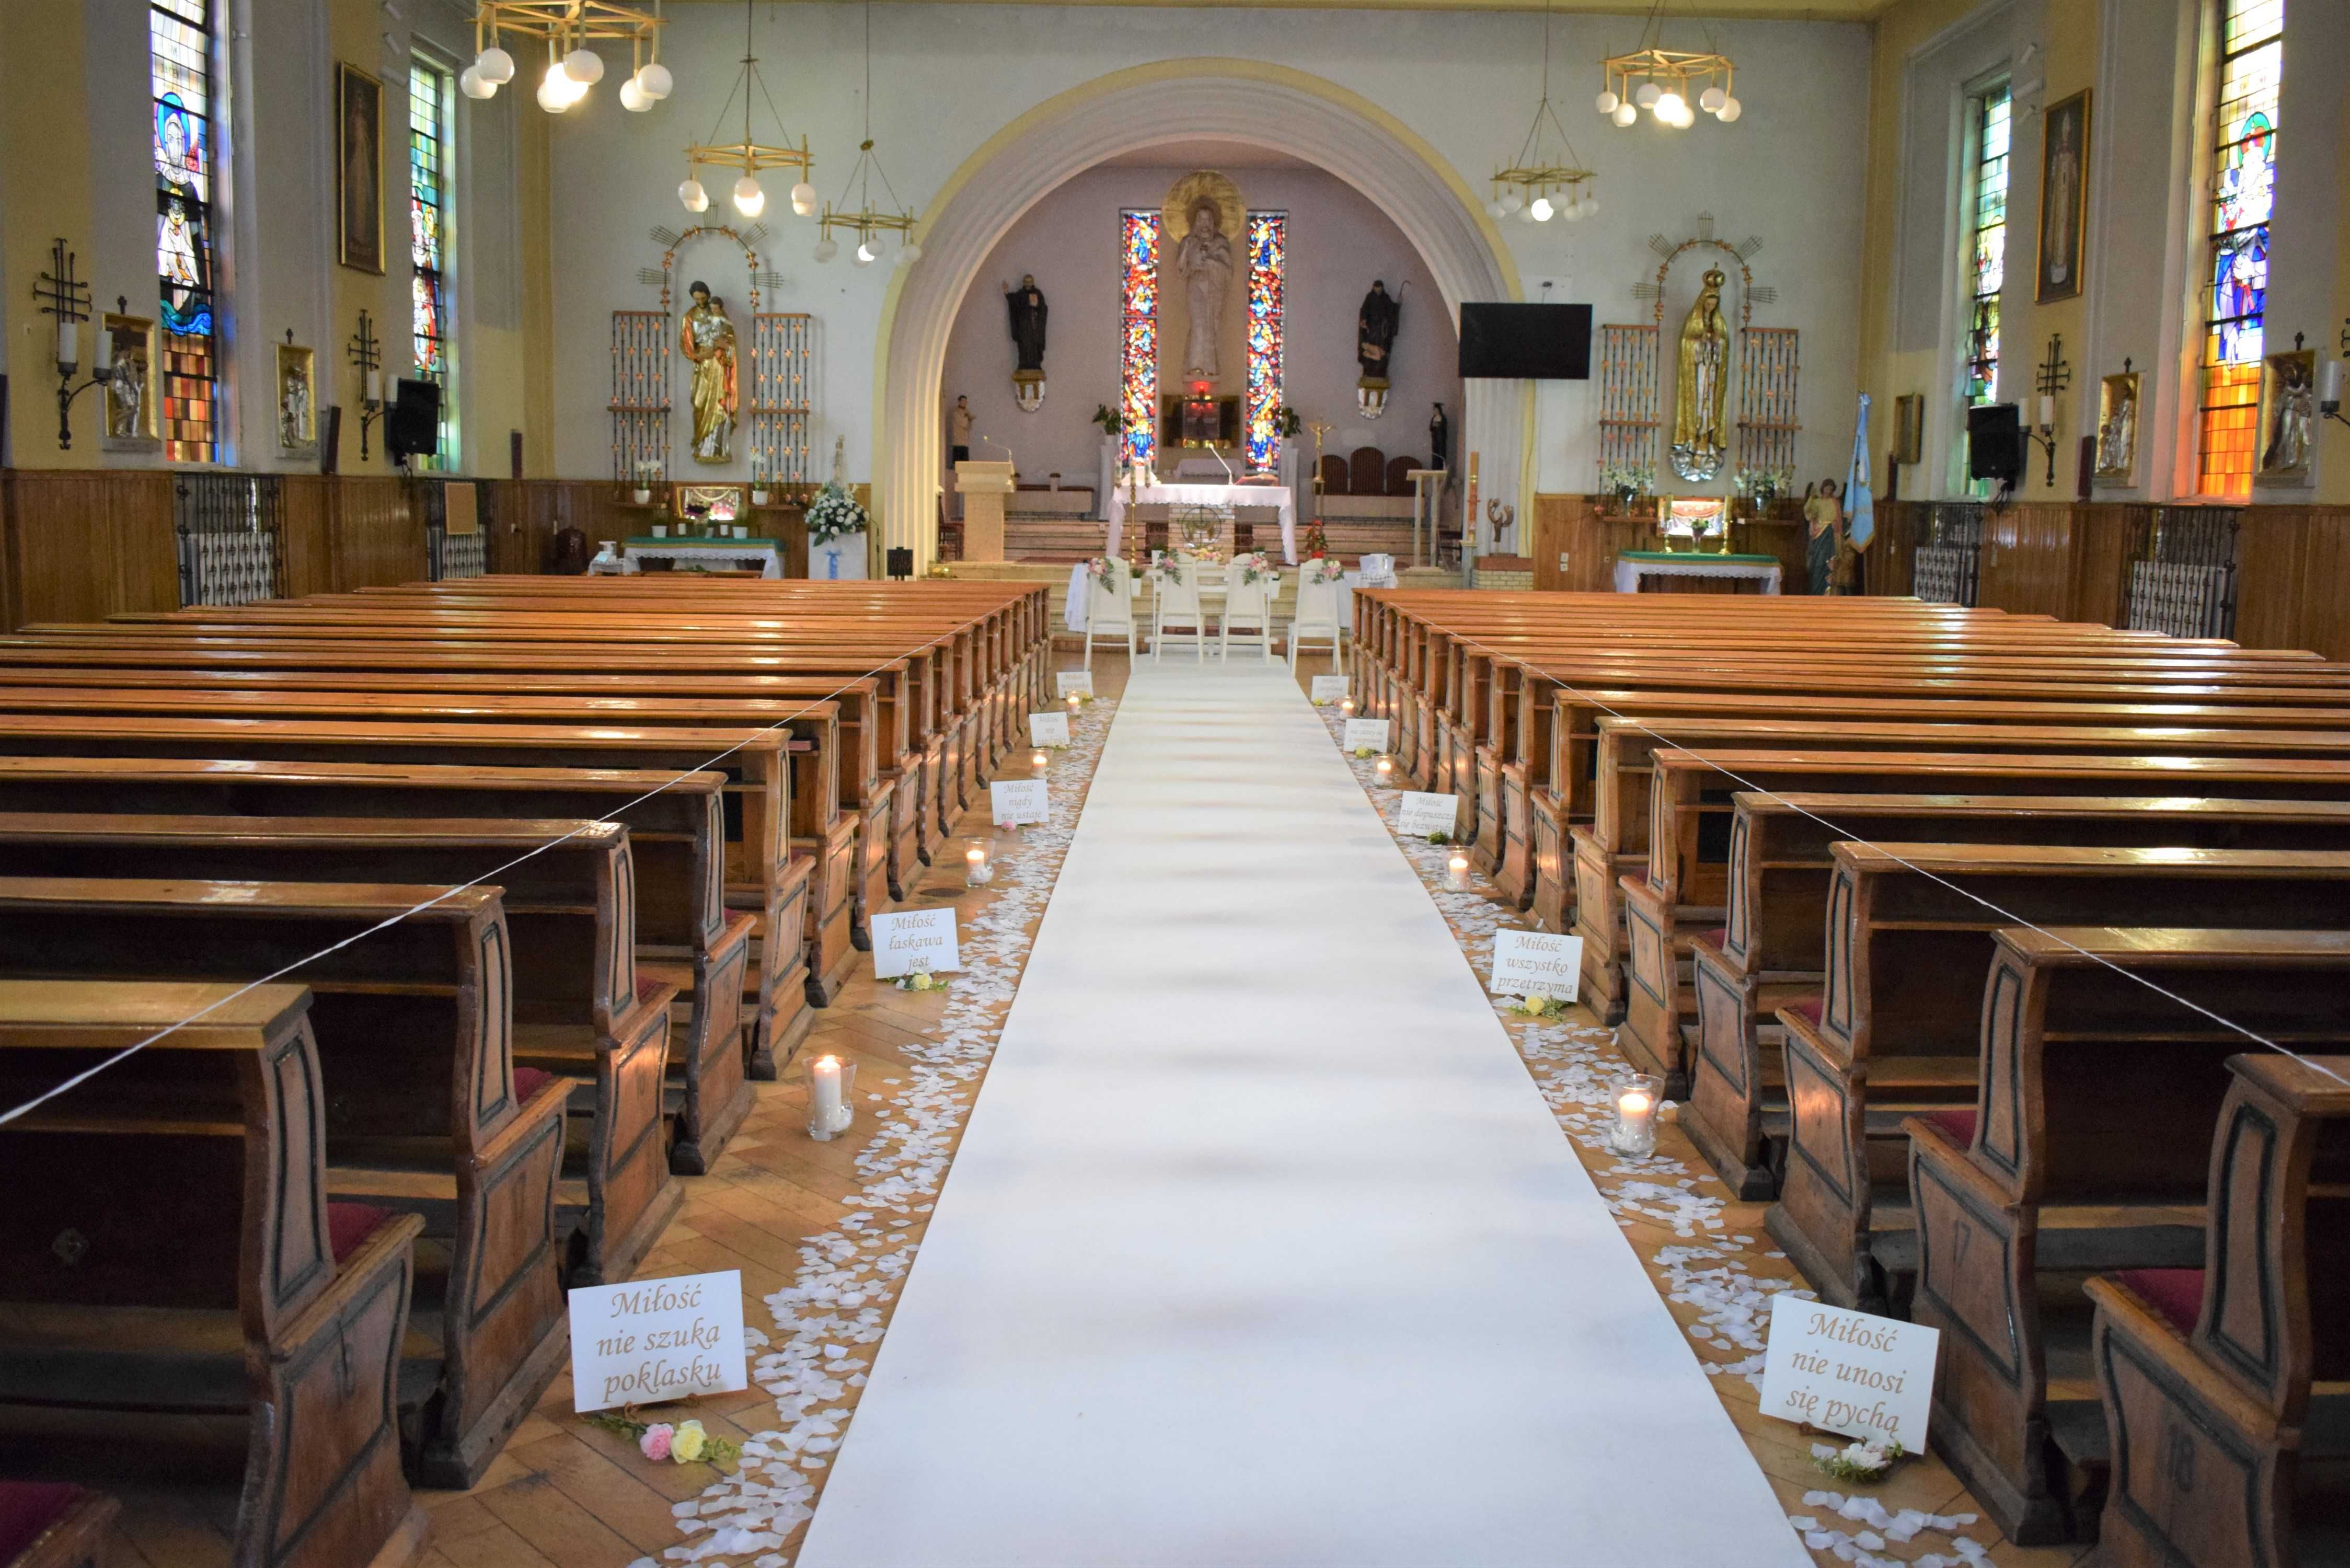 Ślub - dekoracja kościoła biały dywan, świeczniki